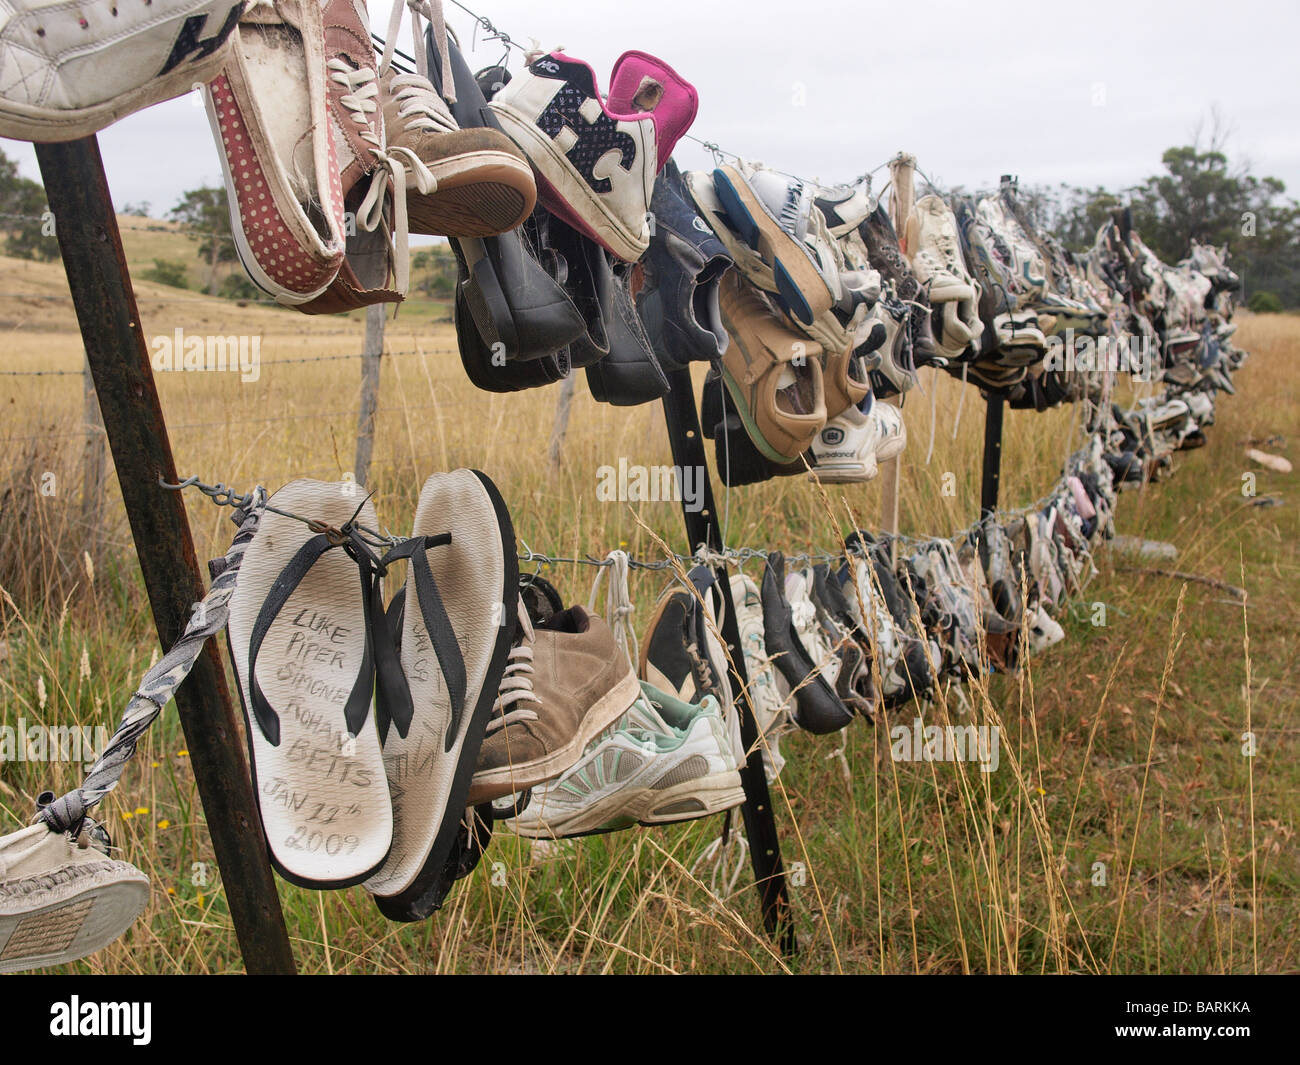 Formateurs perdus et abandonnés, des tongs et des chaussures accrochées sur barbelés Tasmanie Australie Banque D'Images